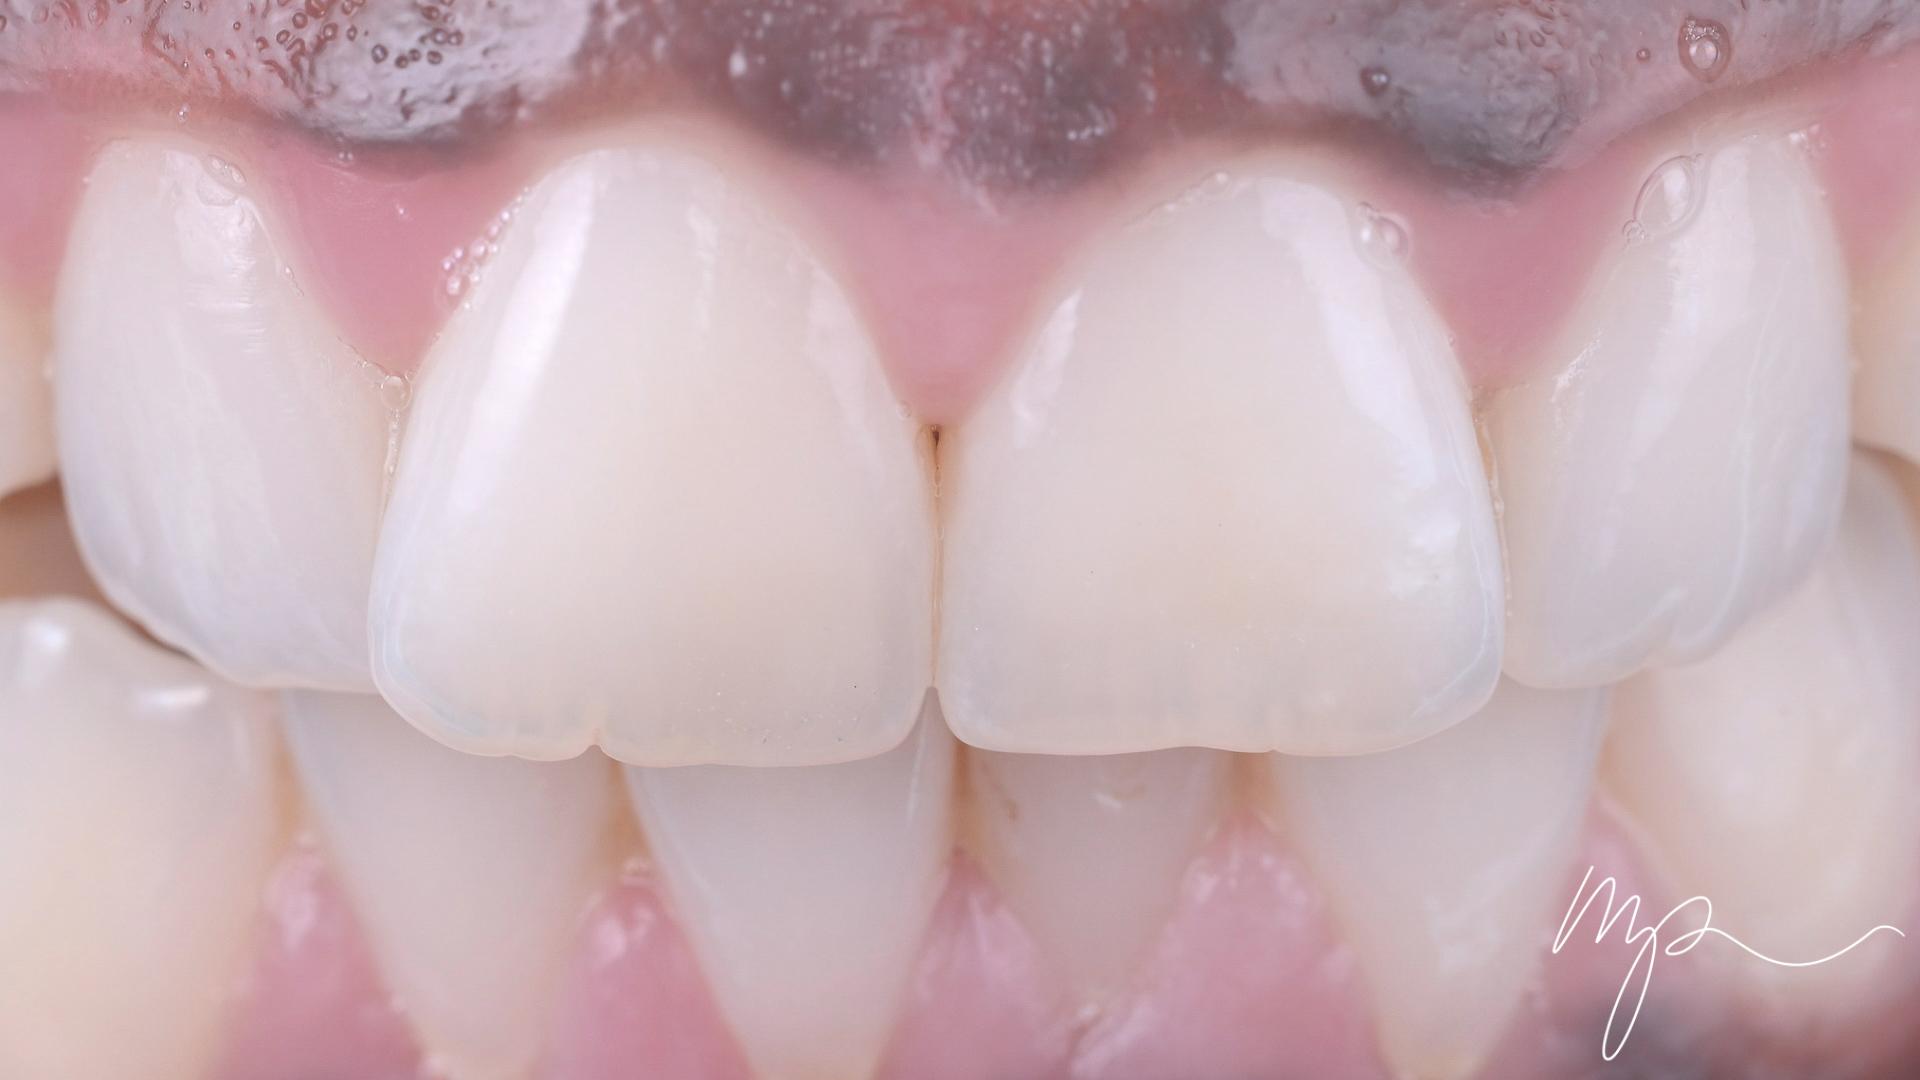 Dr Marin Pomperski - Chirurgien Dentiste - composites Apres